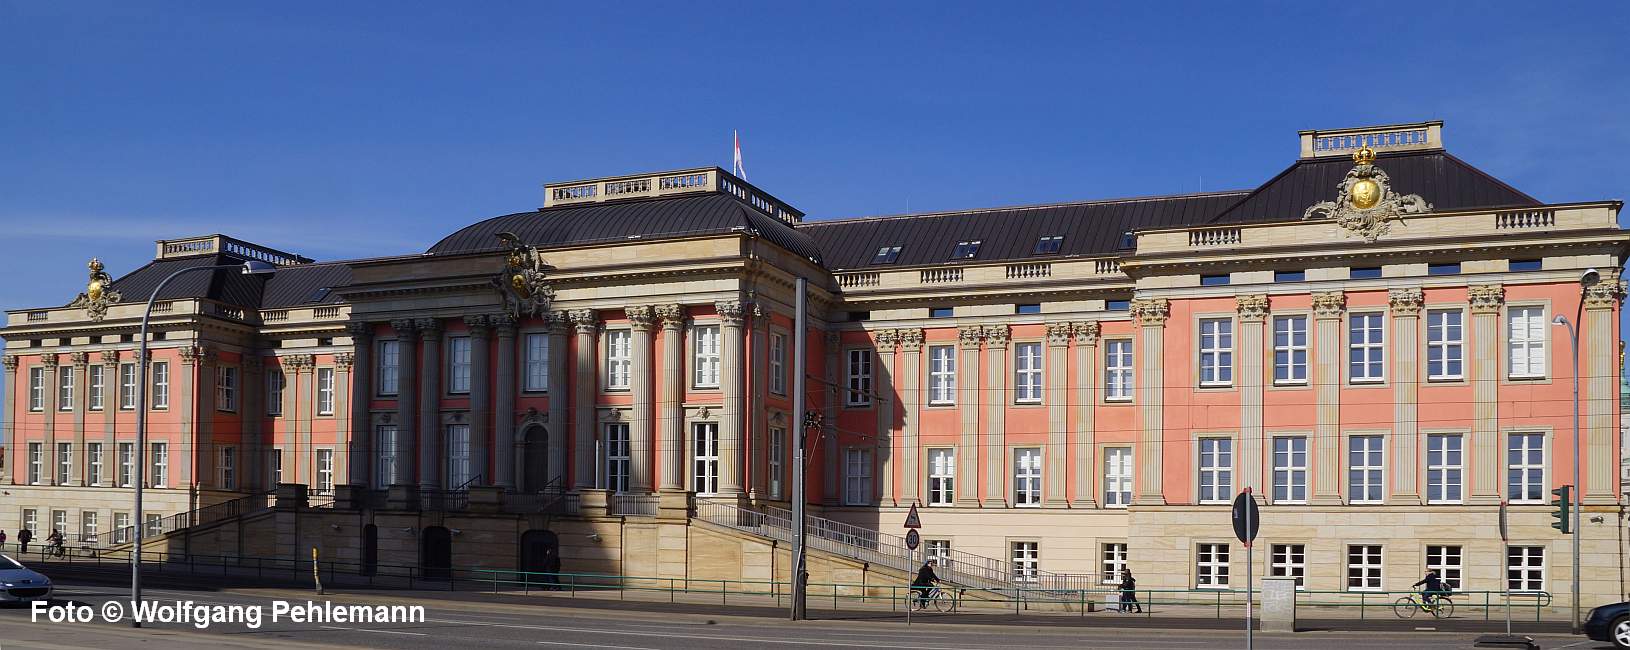 Landtag Brandenburg im Stadtschloss von Potsdam - Foto © Wolfgang Pehlemann